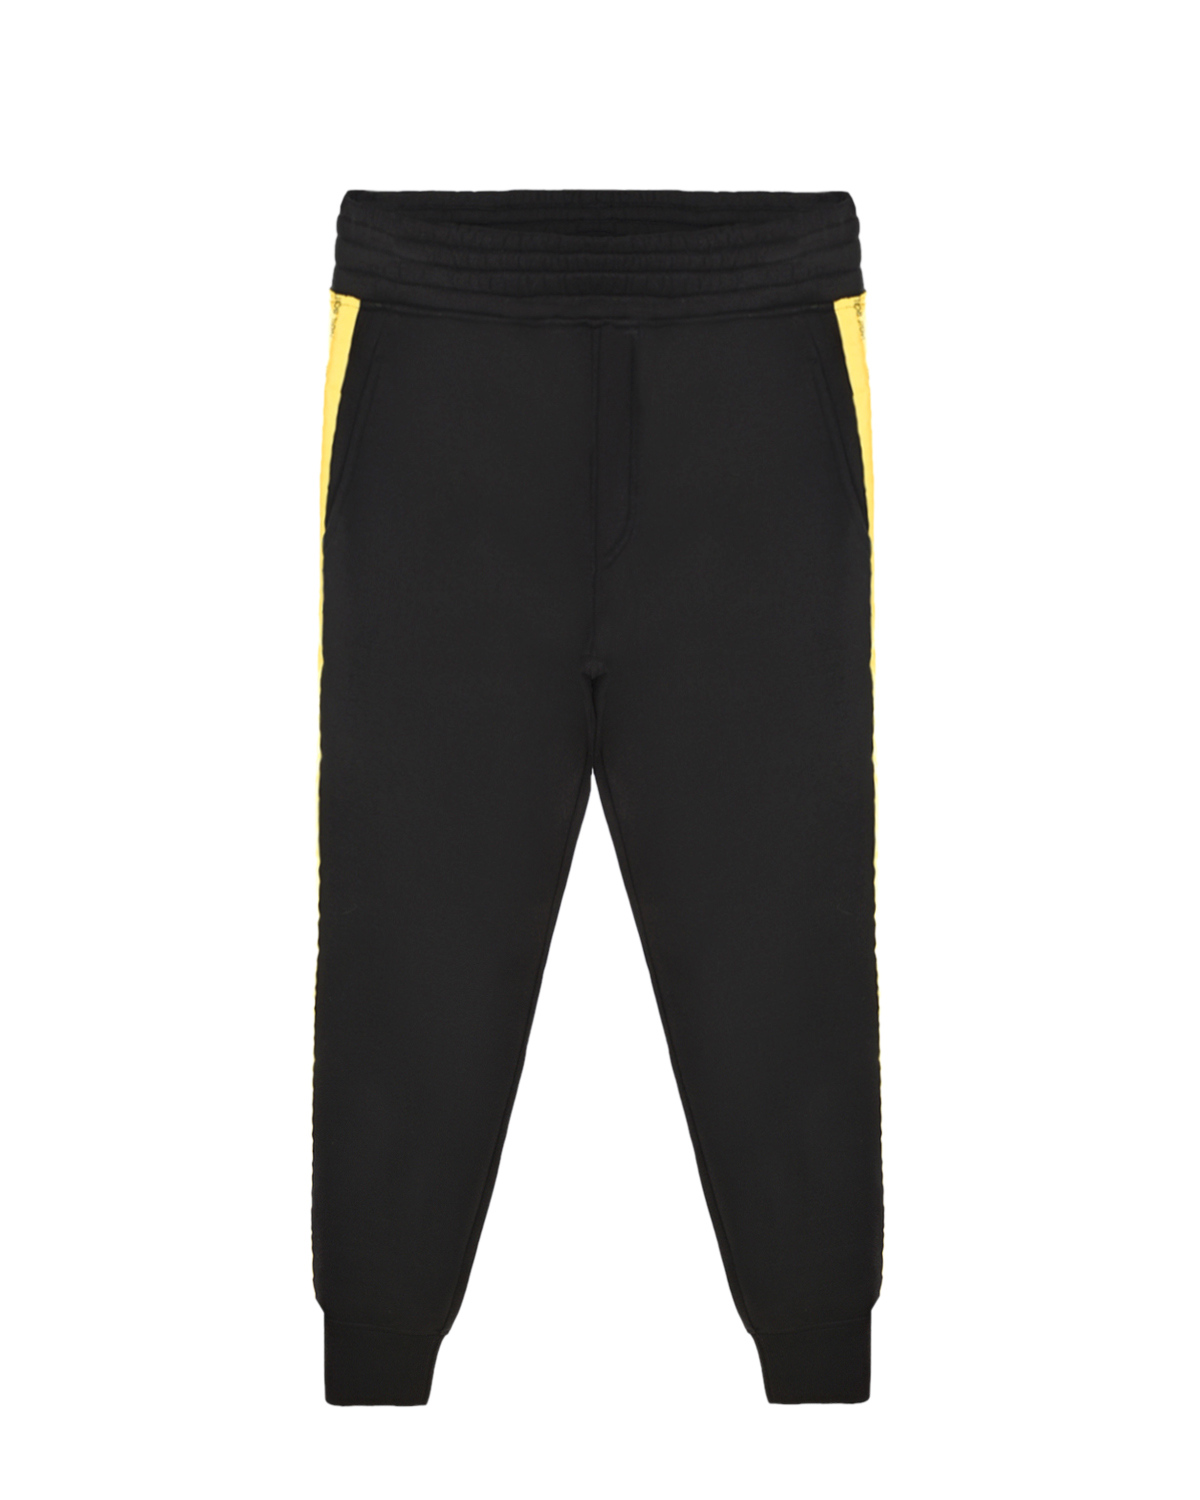 Спортивные брюки с желтыми лампасами Neil Barrett детские, размер 140, цвет черный - фото 1